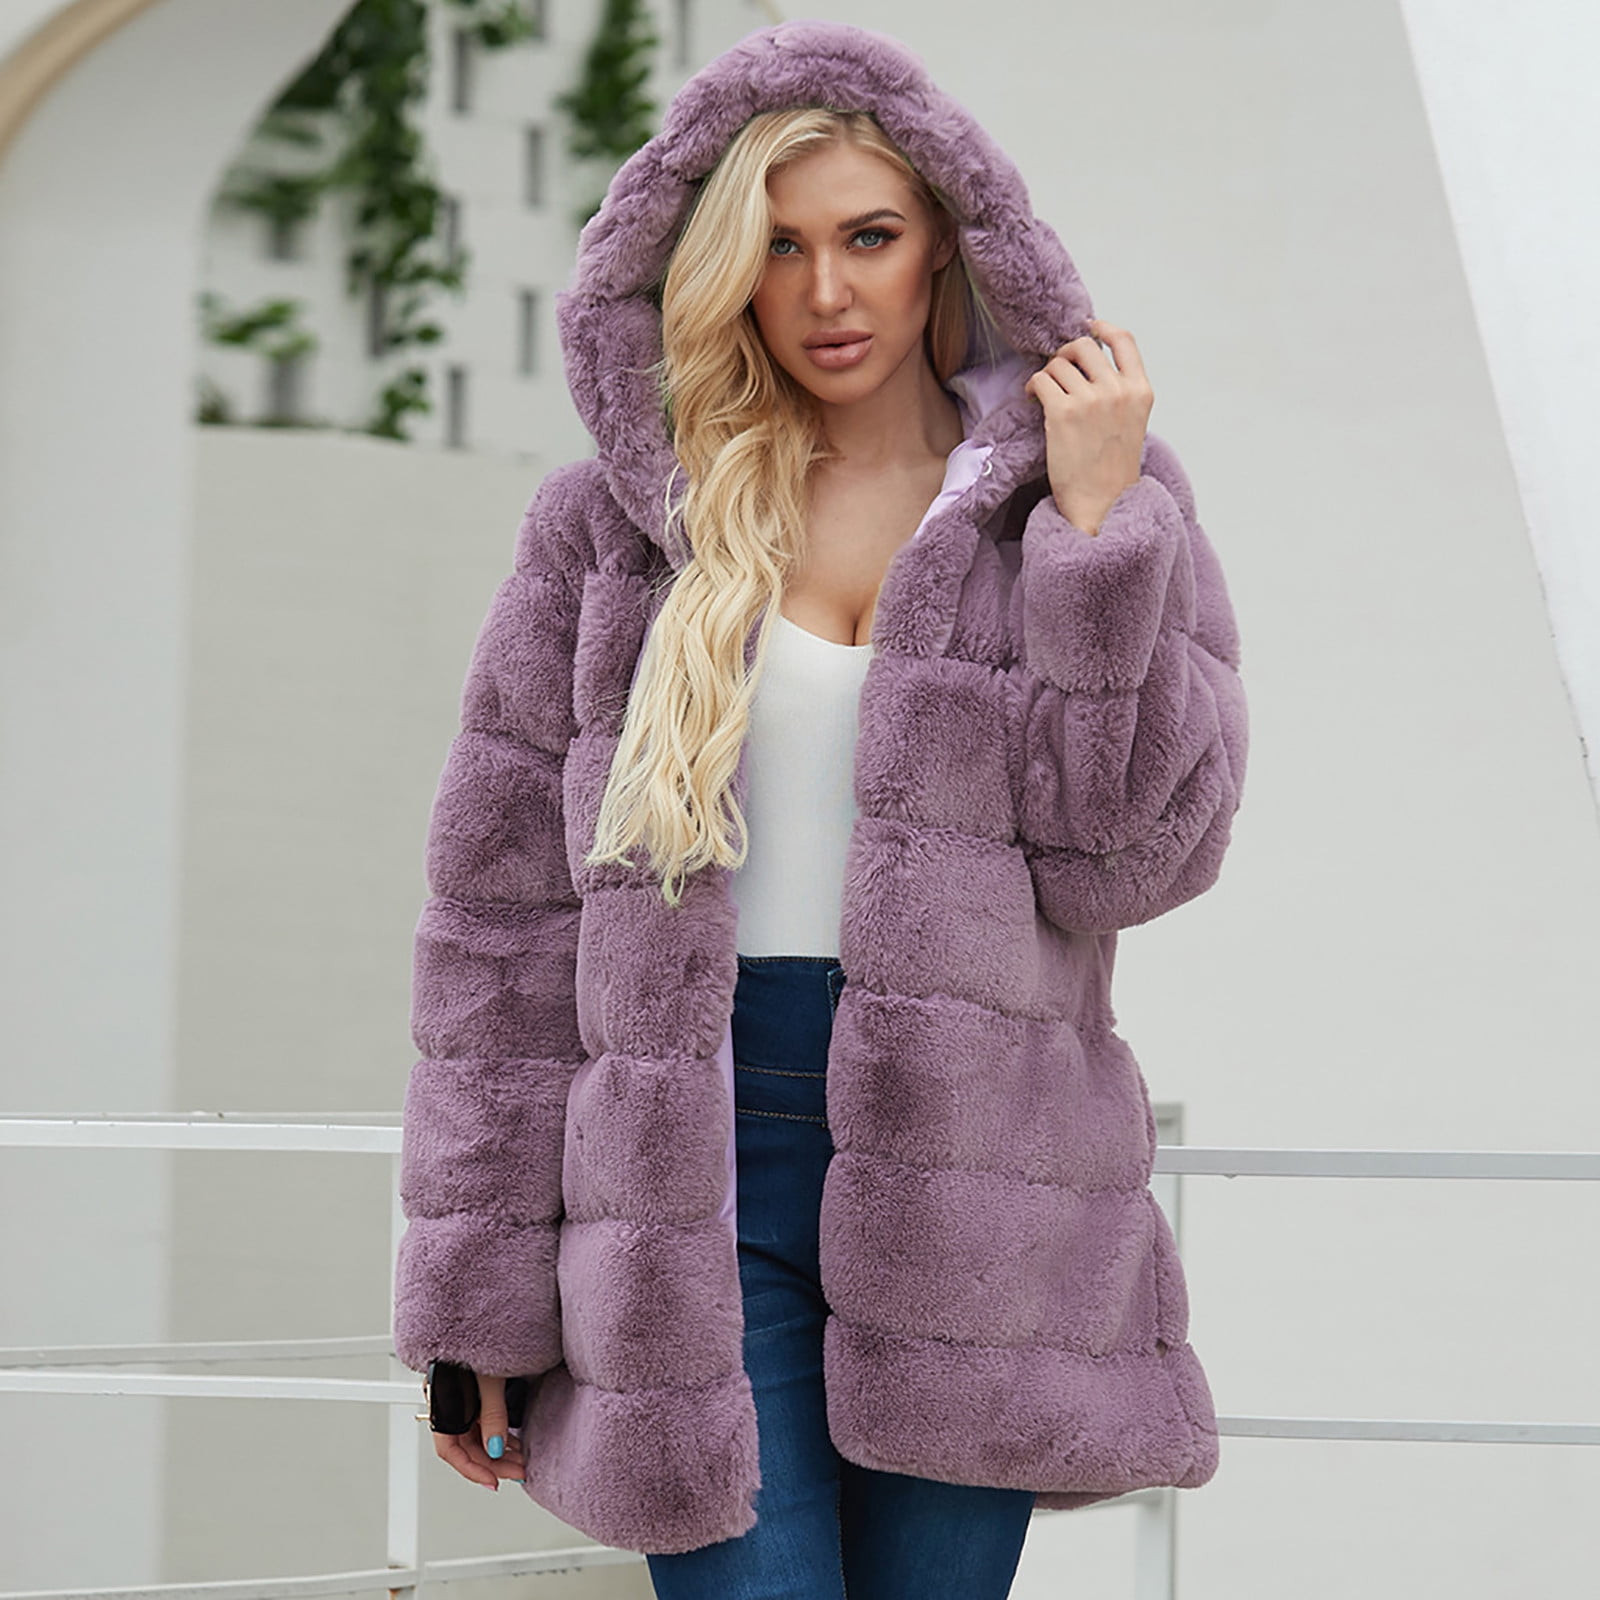 Womens Long Sleeve Winter Warm Lapel Fox Faux Fur Coat Jacket Overcoat Outwear with Pockets